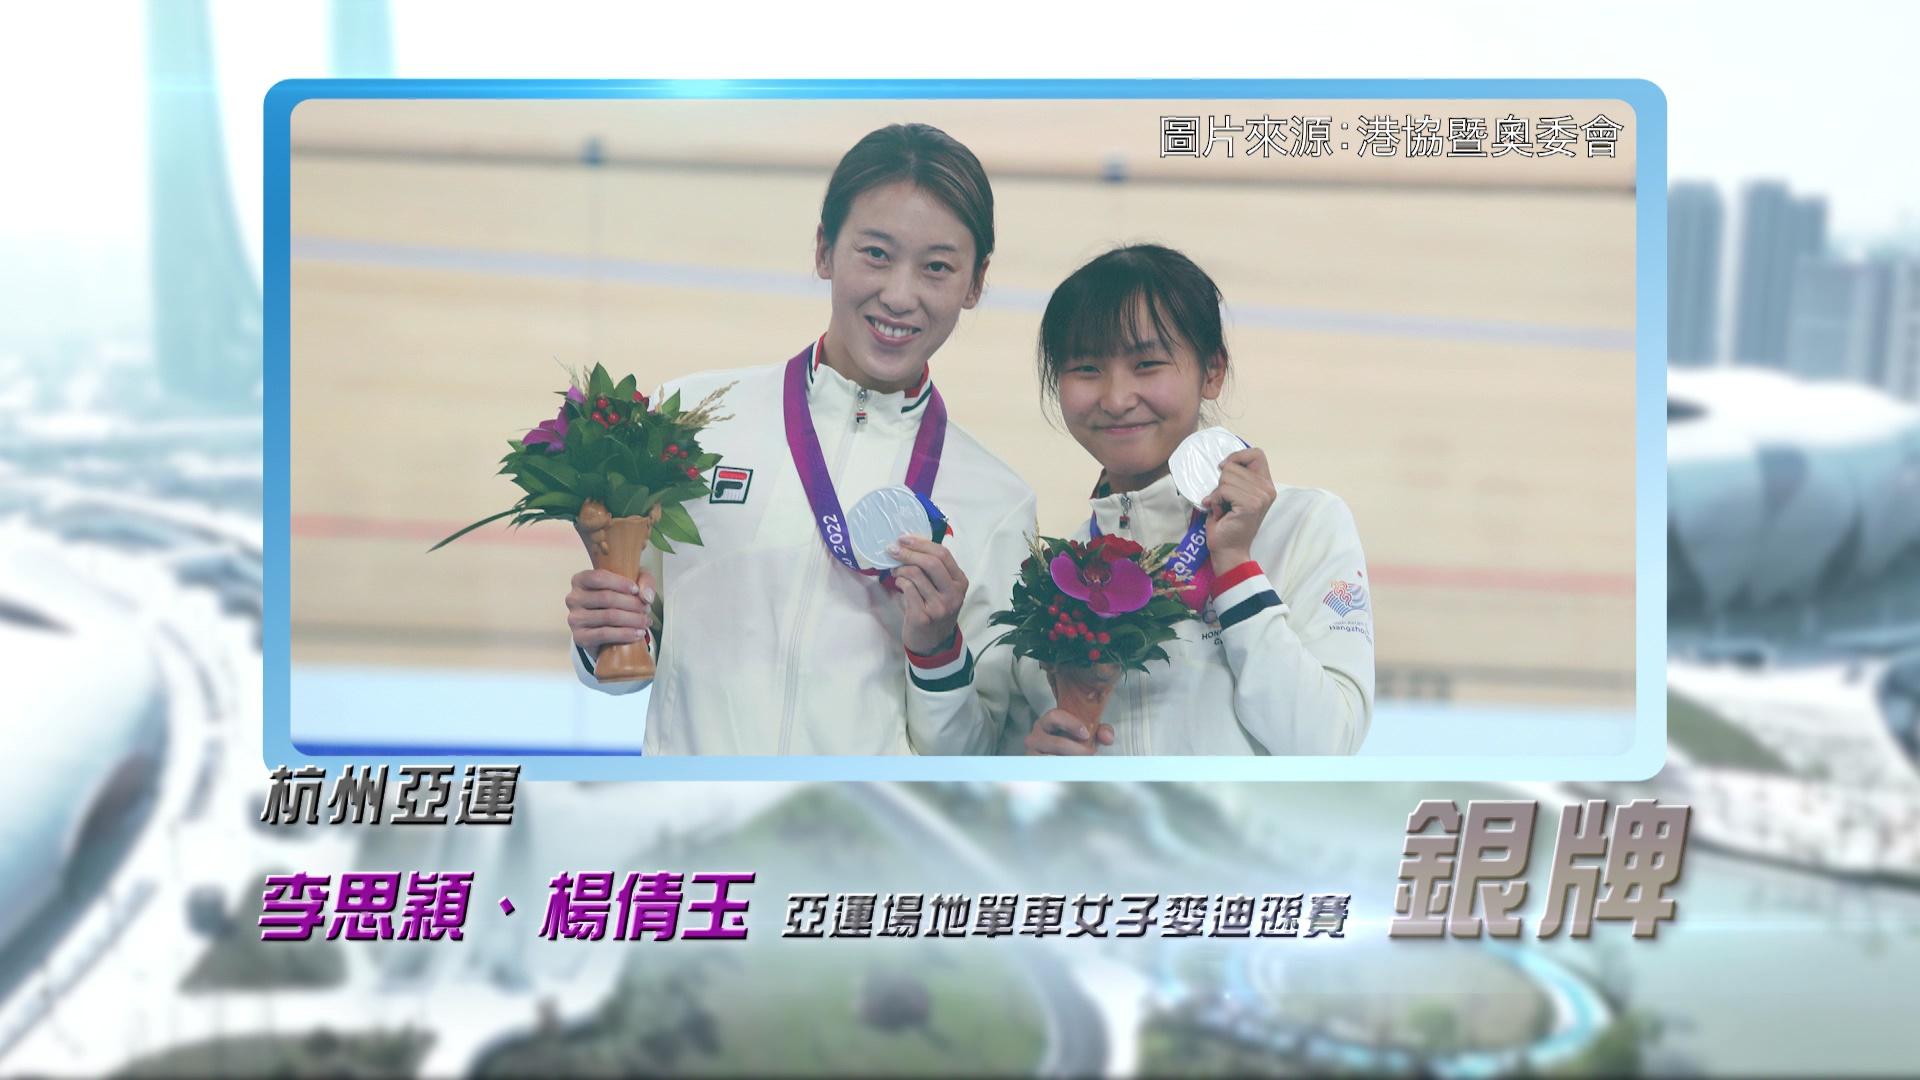 恭喜香港单车队代表李思颖、杨倩玉及梁嘉儒与杭州亚运再创佳绩